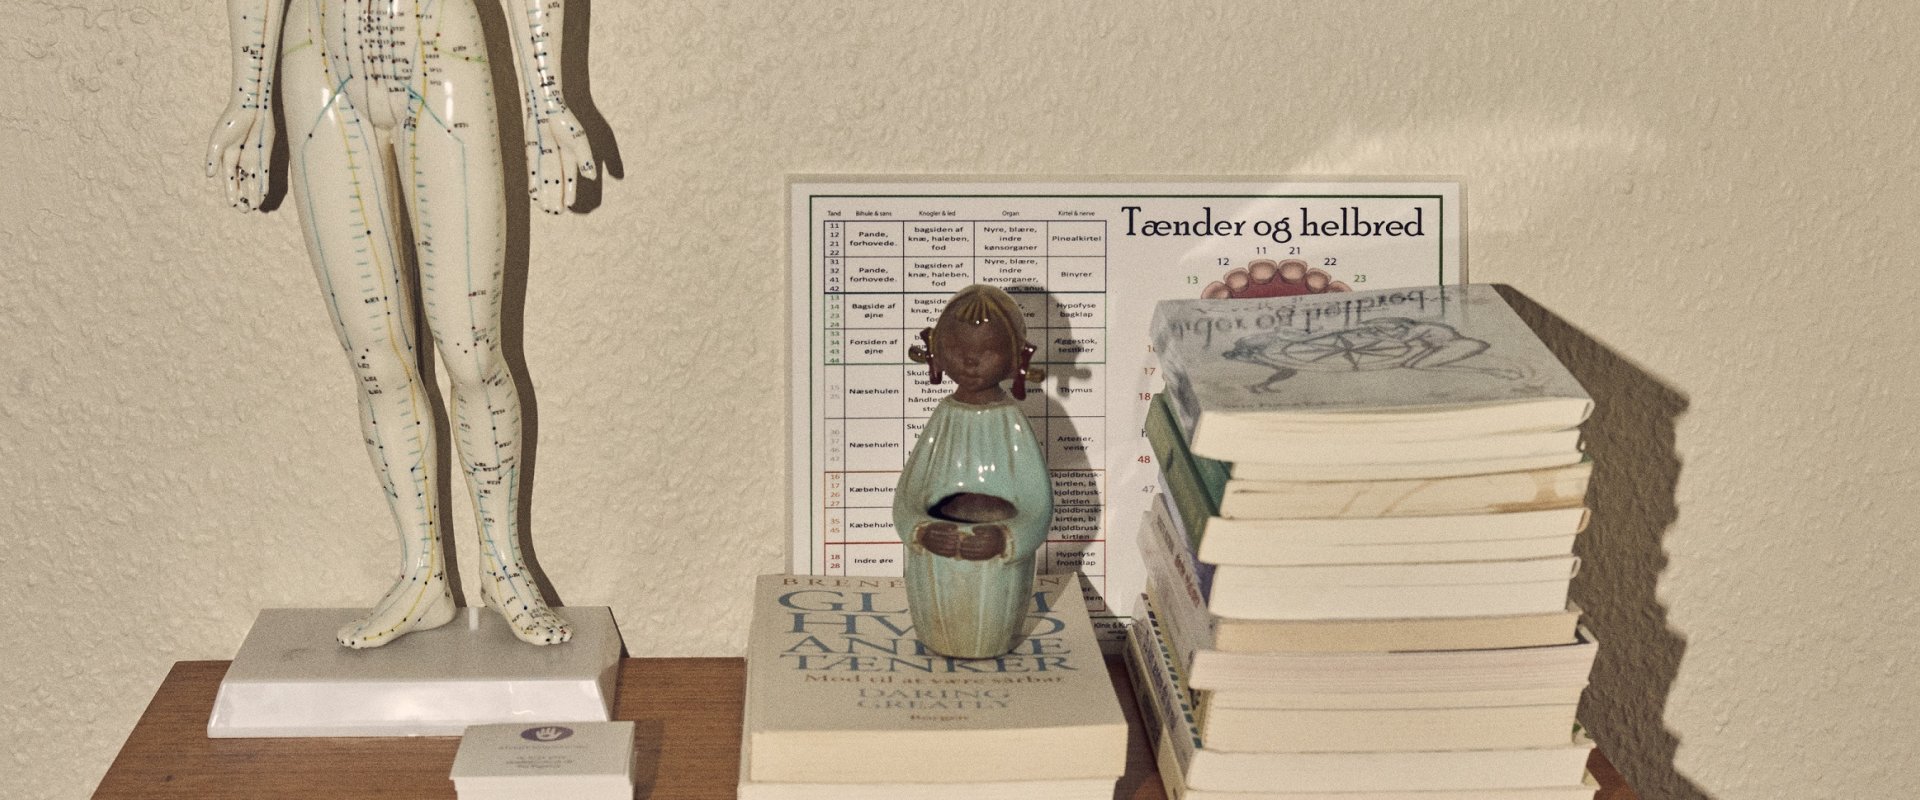 Nærbillede af interiør i Pia Elgaards lejlighed blandt andet bøger i en bogreol og en porcelænsfigur af en upåklædt person med påmalede akupunkturpunkter